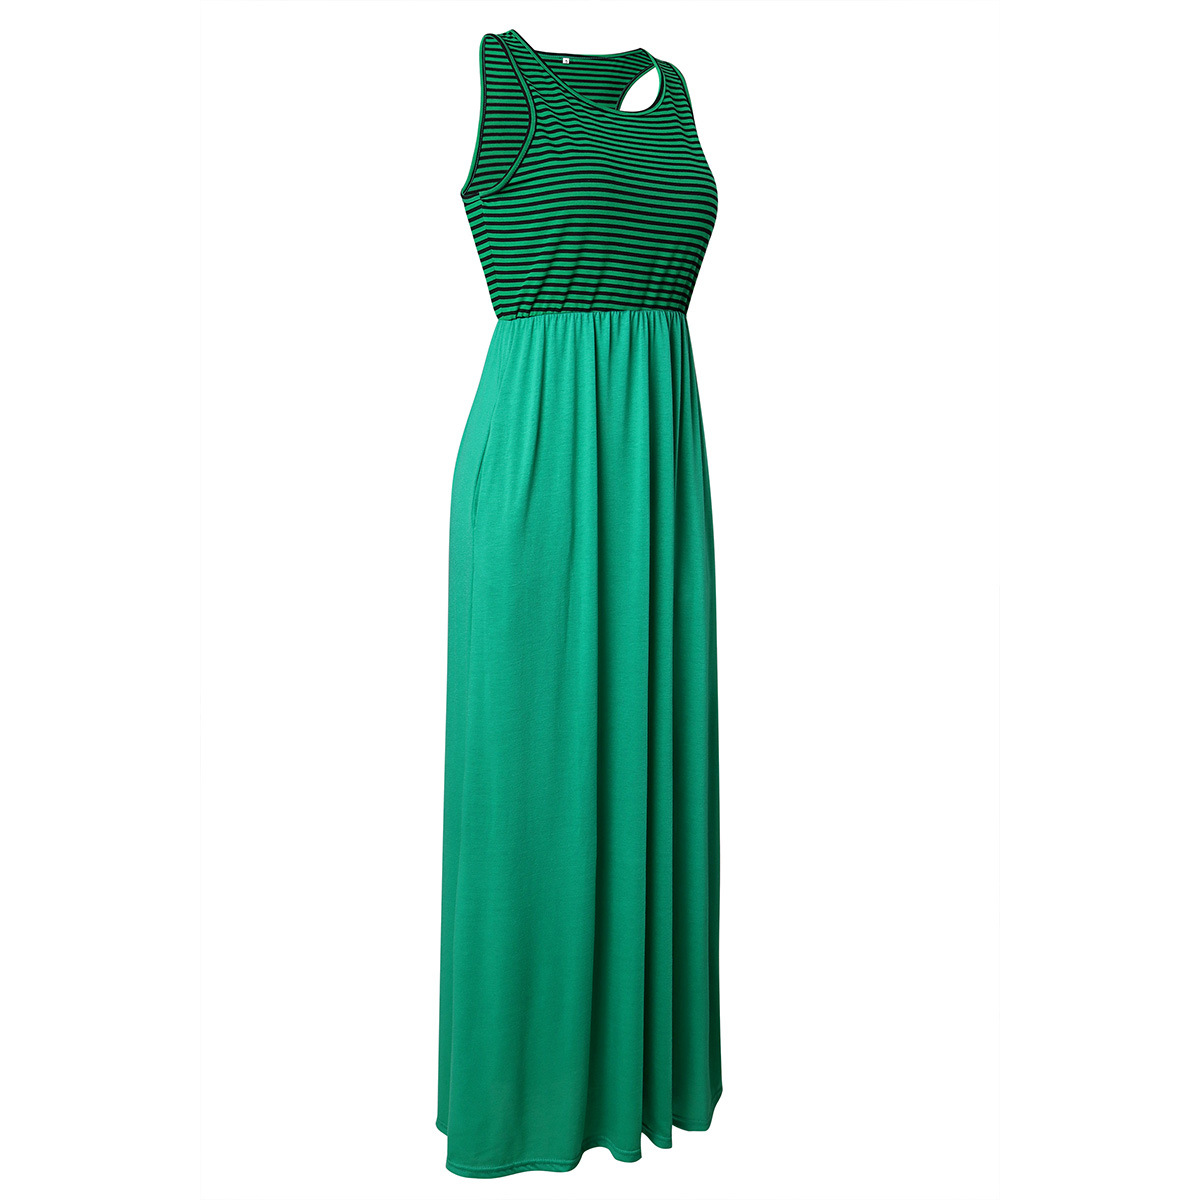 Women Boho Maxi Dress Sleeveless Summer Beach Striped Patchwok Long Sundress green